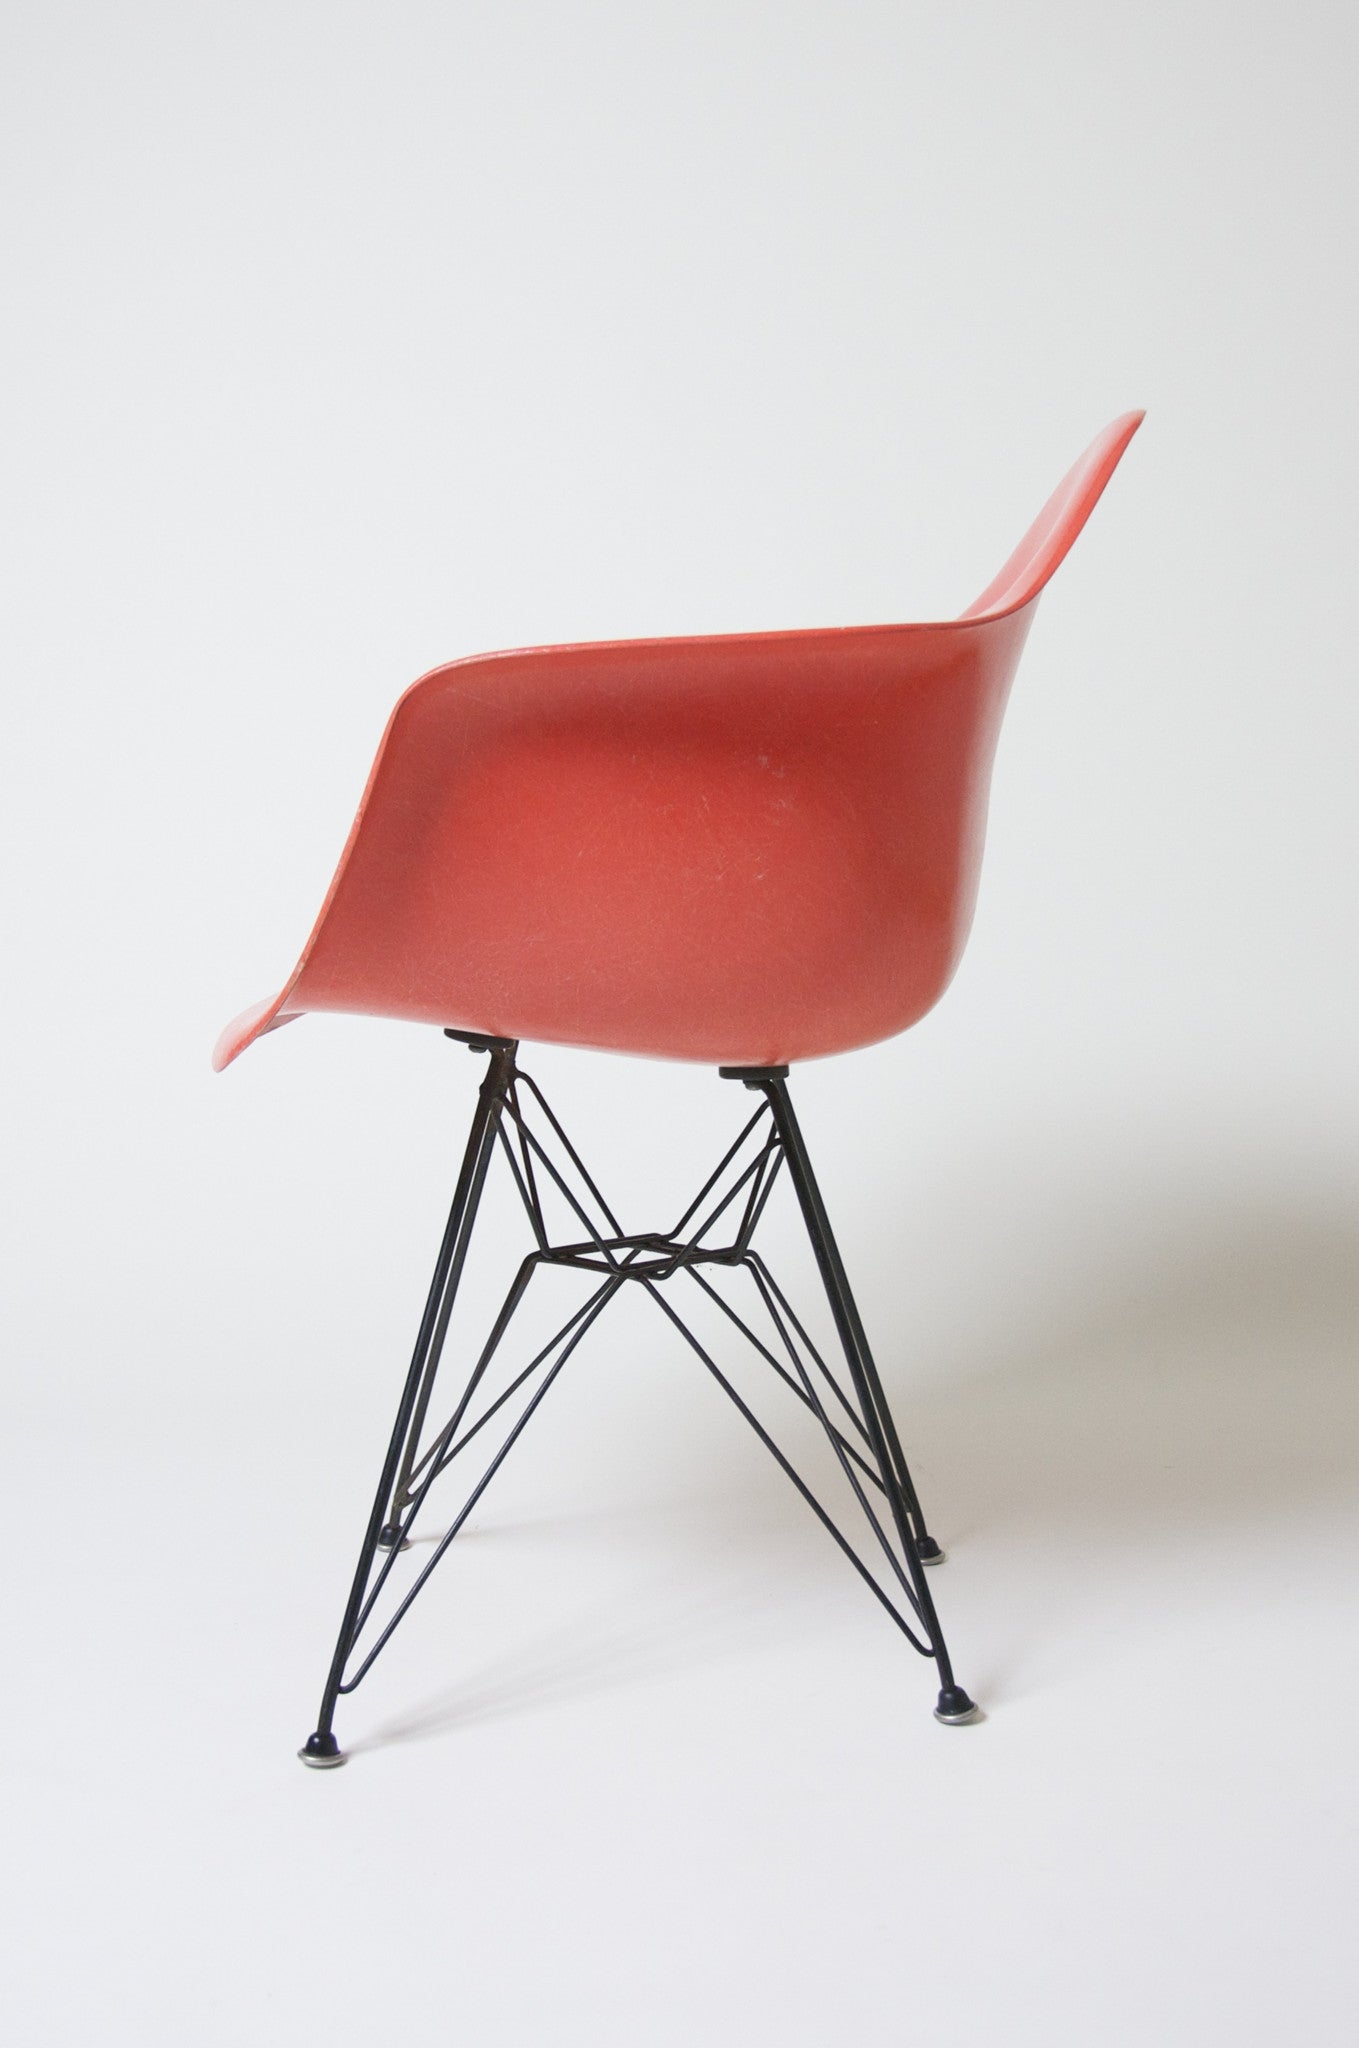 SOLD 1958 Original Eames Eiffel Tower Herman Miller Fiberglass Arm Shell Chair